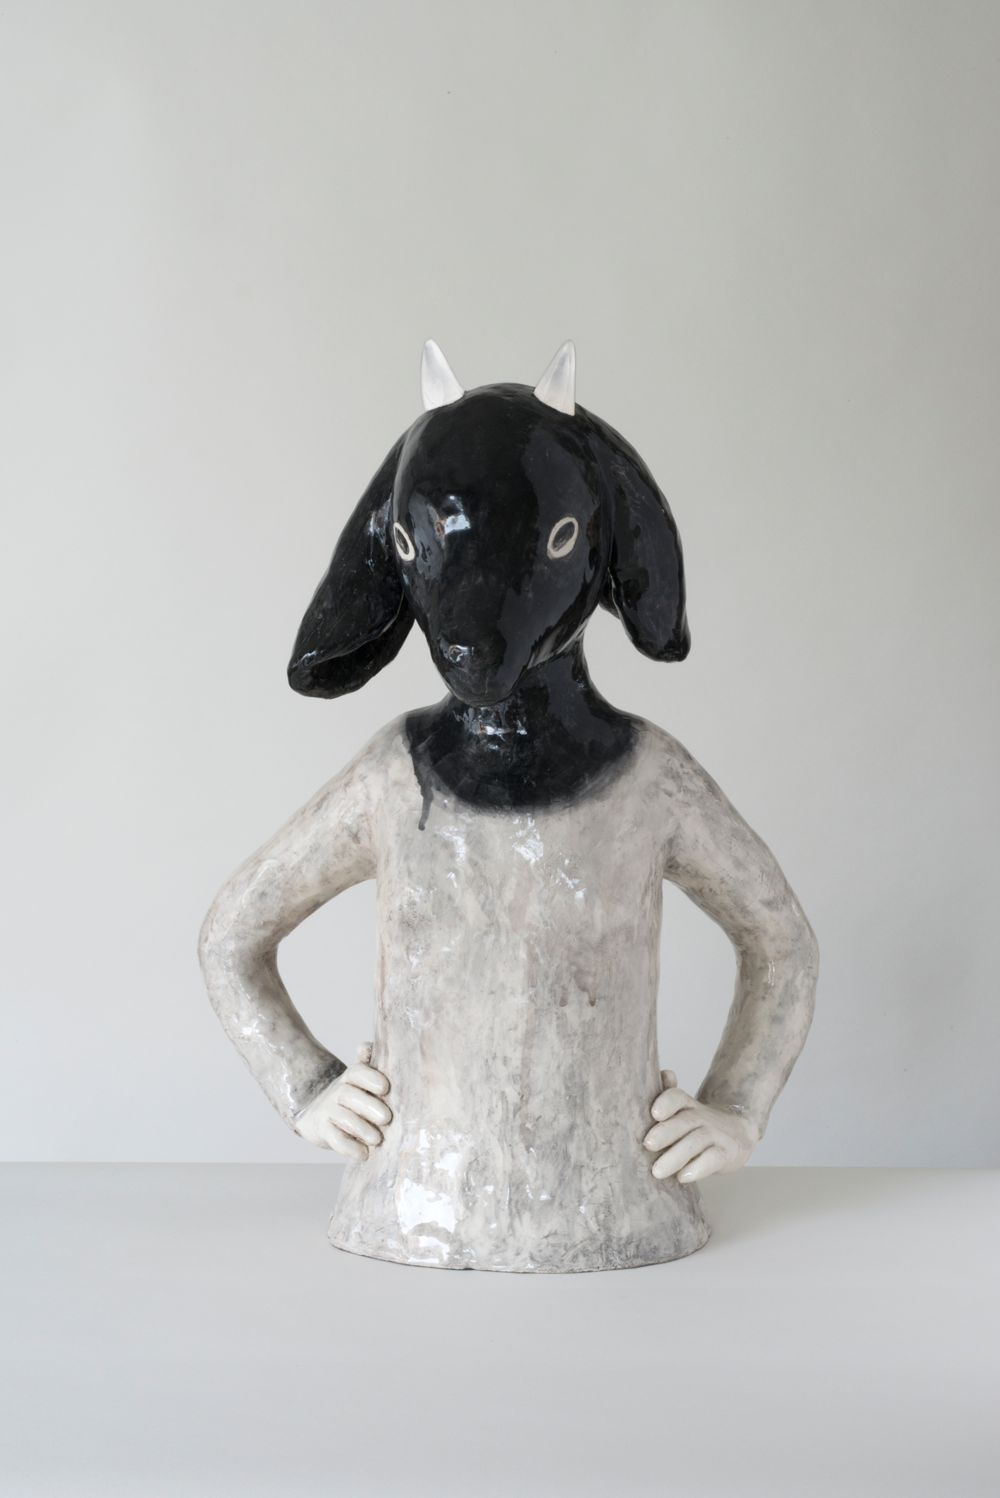 Auf dem Bild ist eine Keramik-Skulptur von der Künstlerin Clémentine de Chabaneix zu sehen. Es ist der Oberkörper eines Mädchens mit einem Ziegenkopf zu sehen.